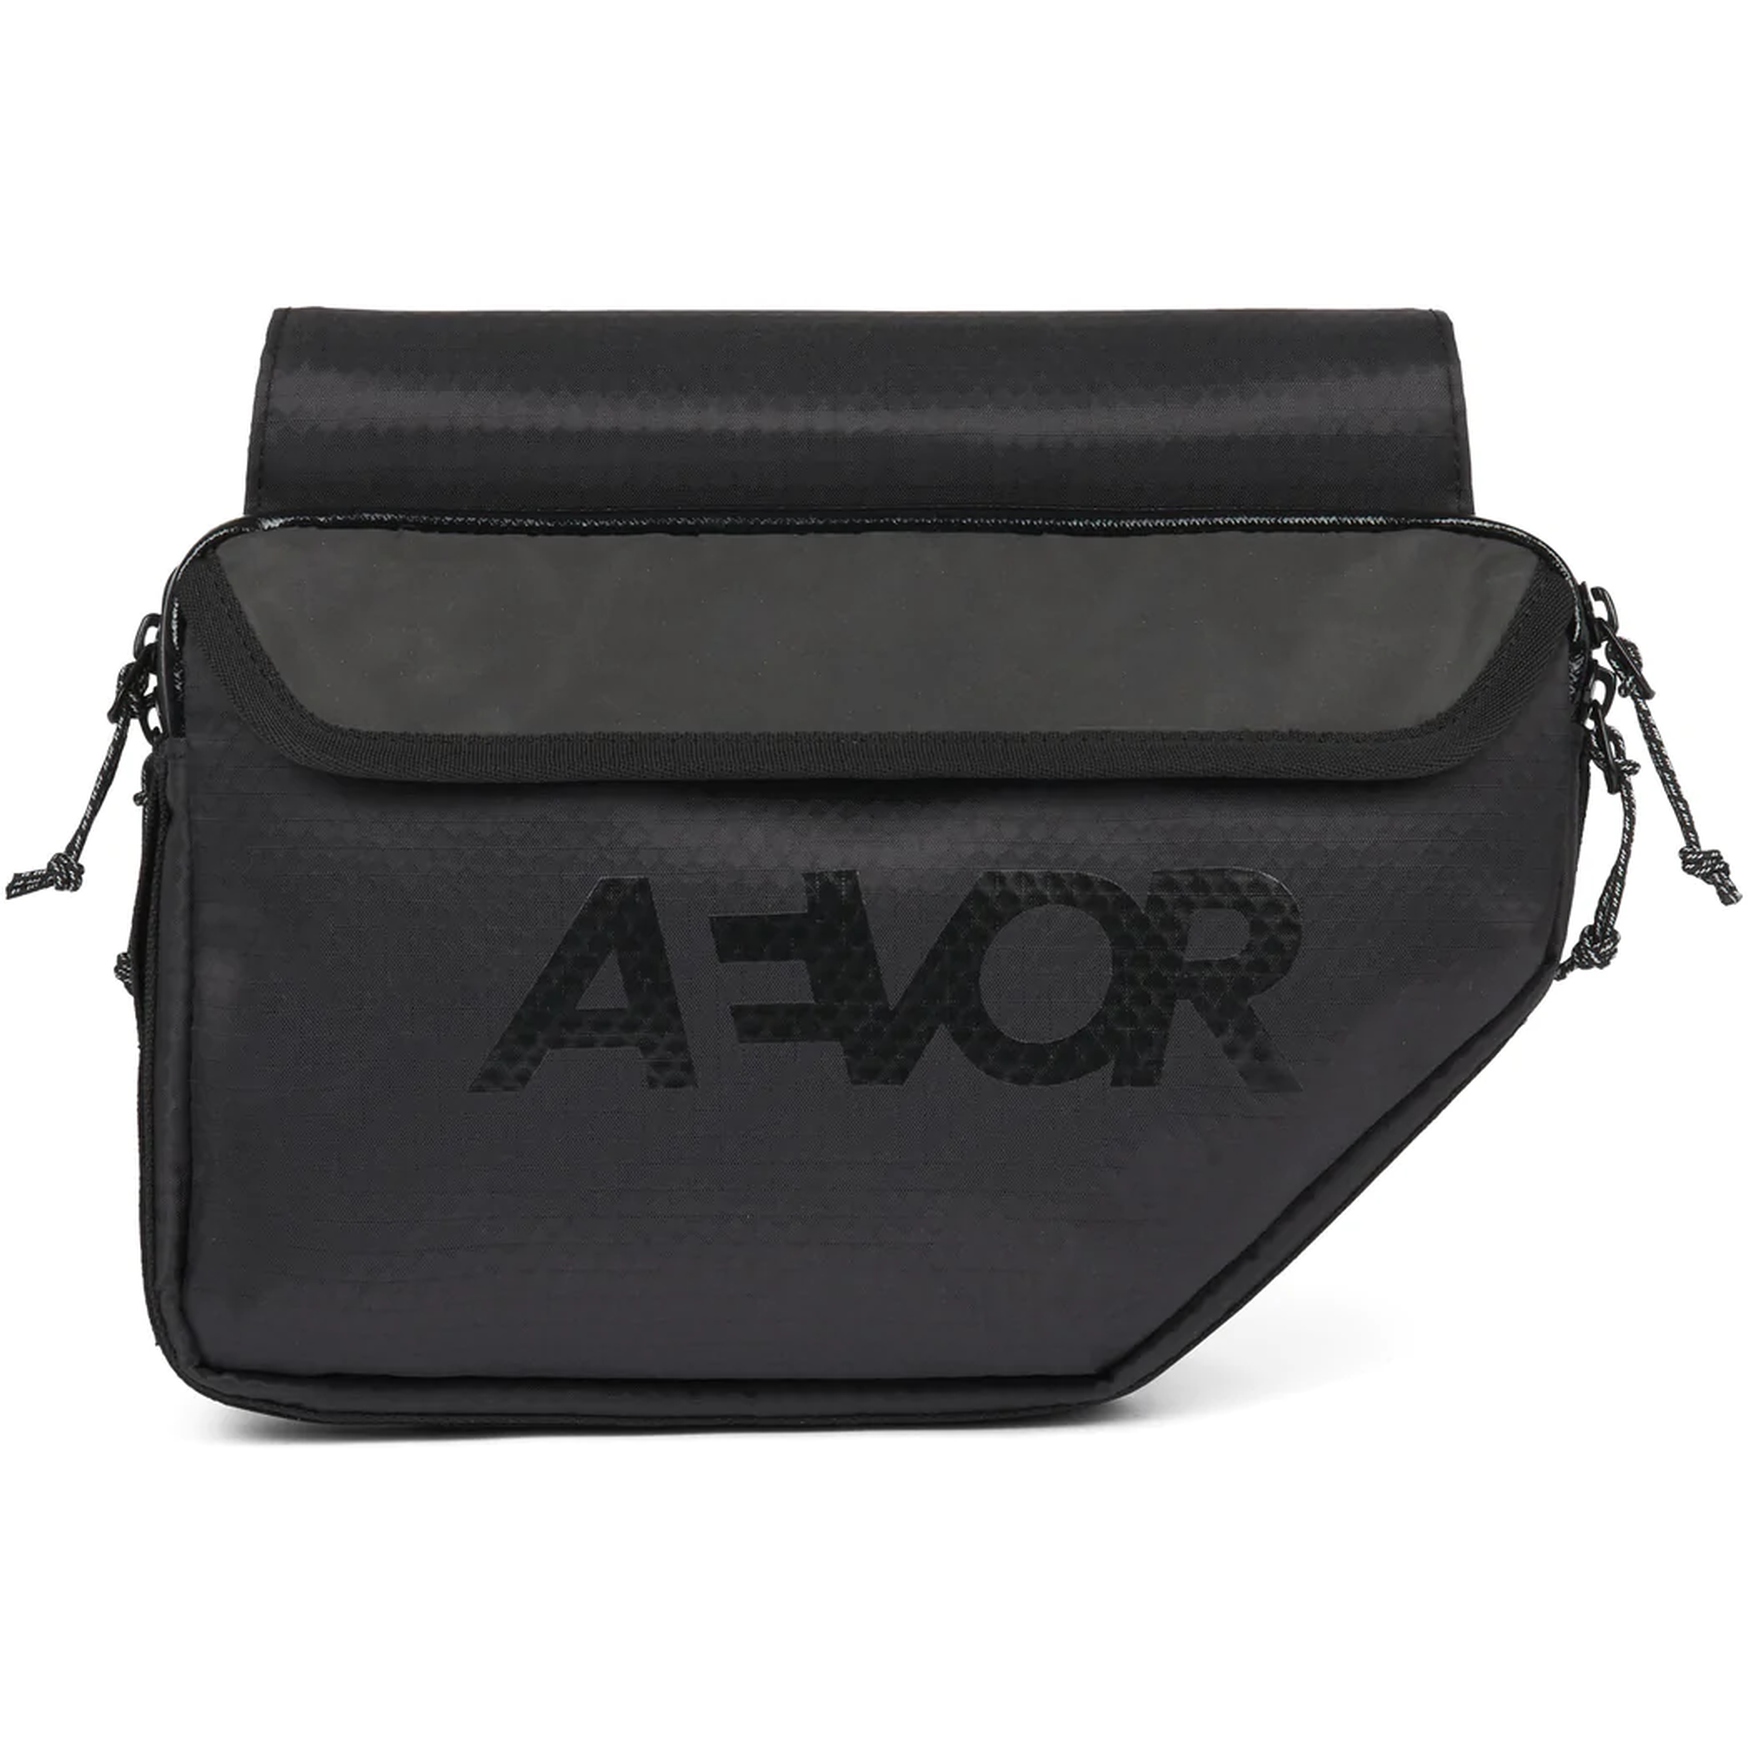 Image of AEVOR Bike Frame Bag - Proof Black